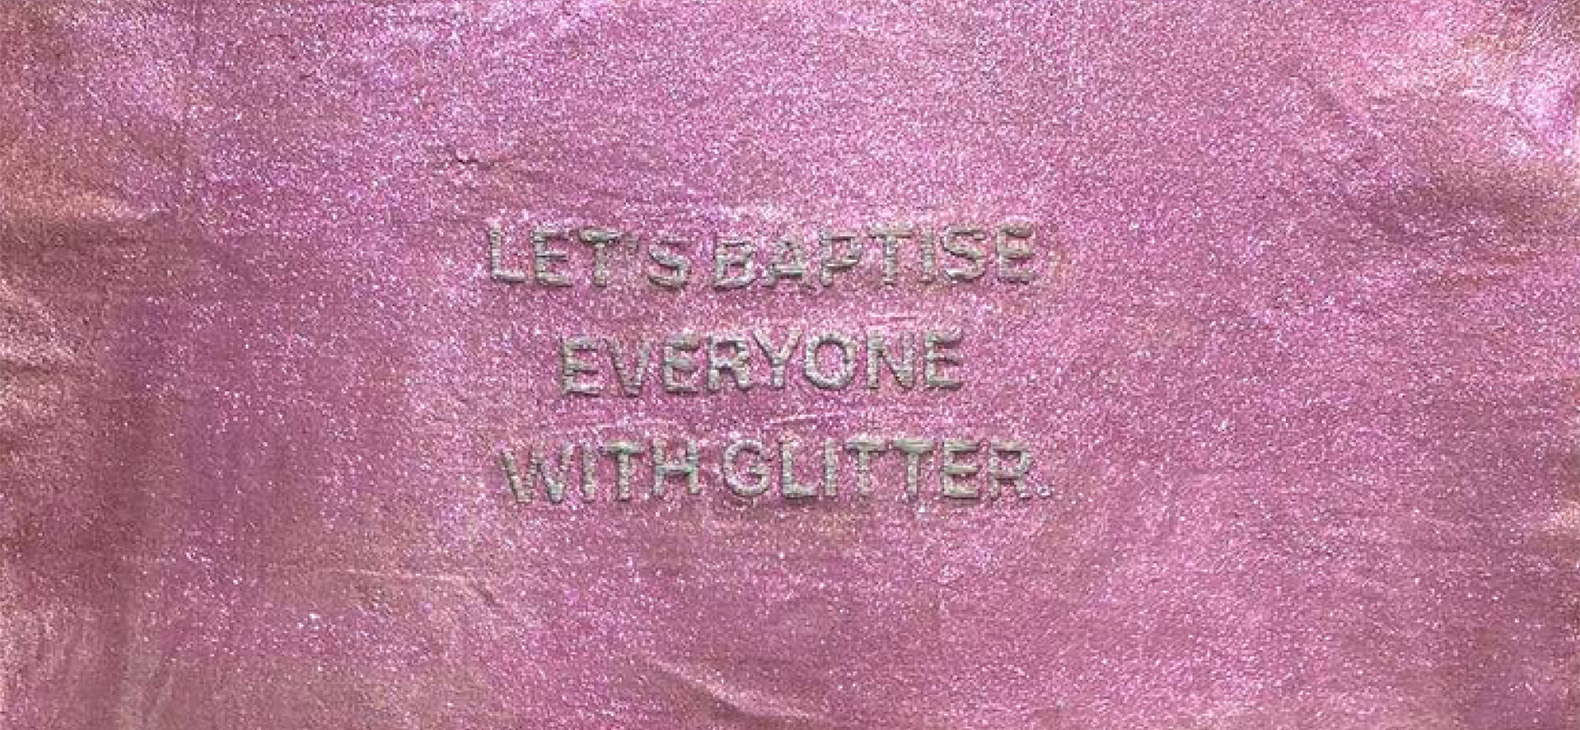 Das Bild zeigt ein Ausschnitt des Kunstwerks der Künstlerin Mariandrie Chrysostomou. Der Hintergrund ist Pink und glitzert. In der Mitte ist ein Schriftzug in glitzernder silberner Schrift. Der Schriftzug lautet "LET'S BAPTISE EVERYONE WITH GLITTER".